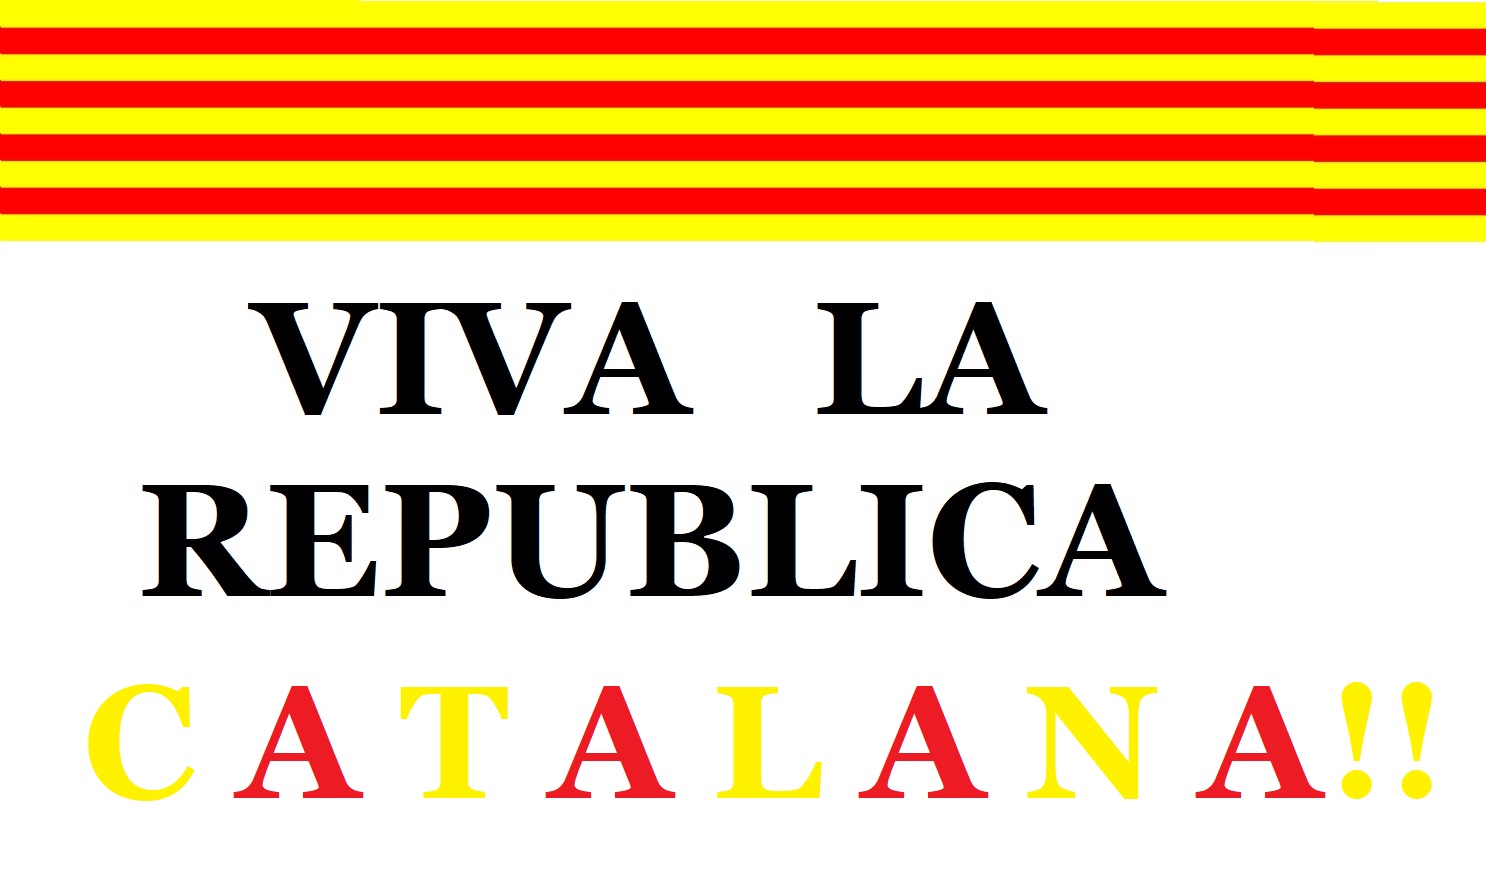 VIVA LA REPUBLICA CATALANA